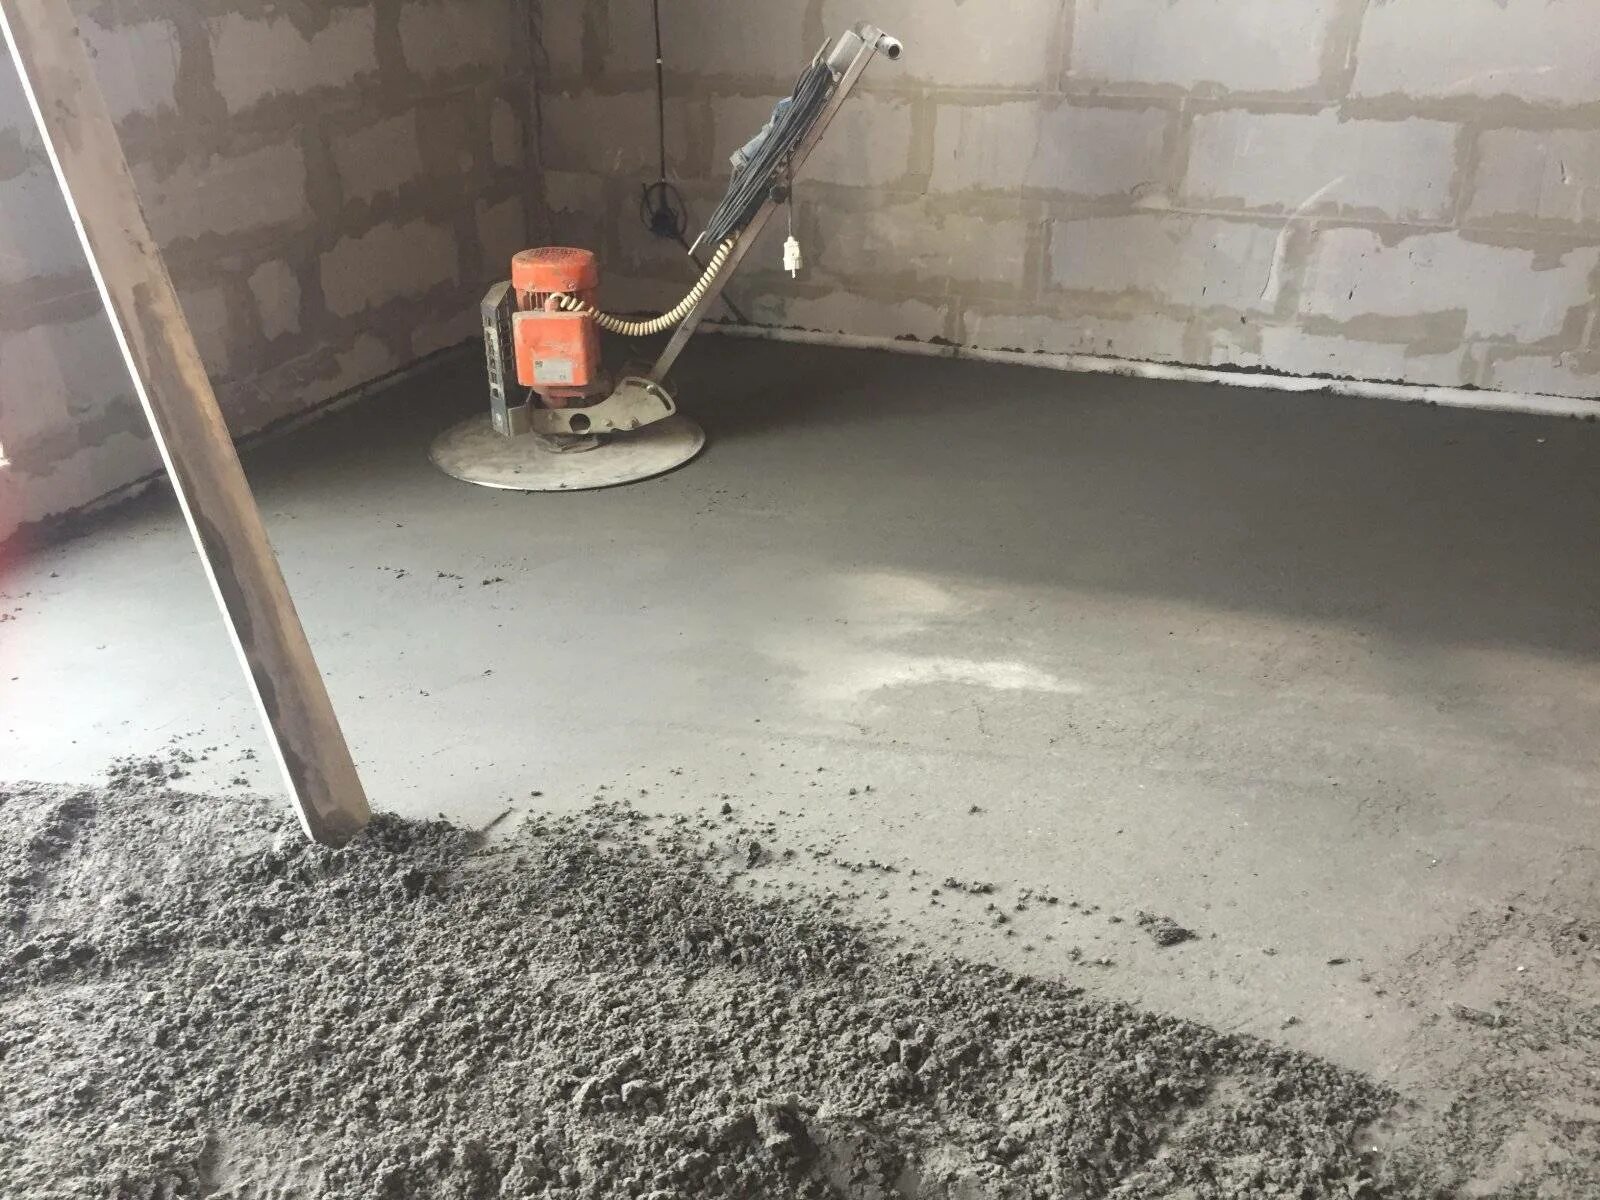 Механизированная полусухая стяжка пола. Хона 700 полу скхая стяжка. Полусухая цементно-Песчаная стяжка. Механизированная стяжка пола марка бетона.